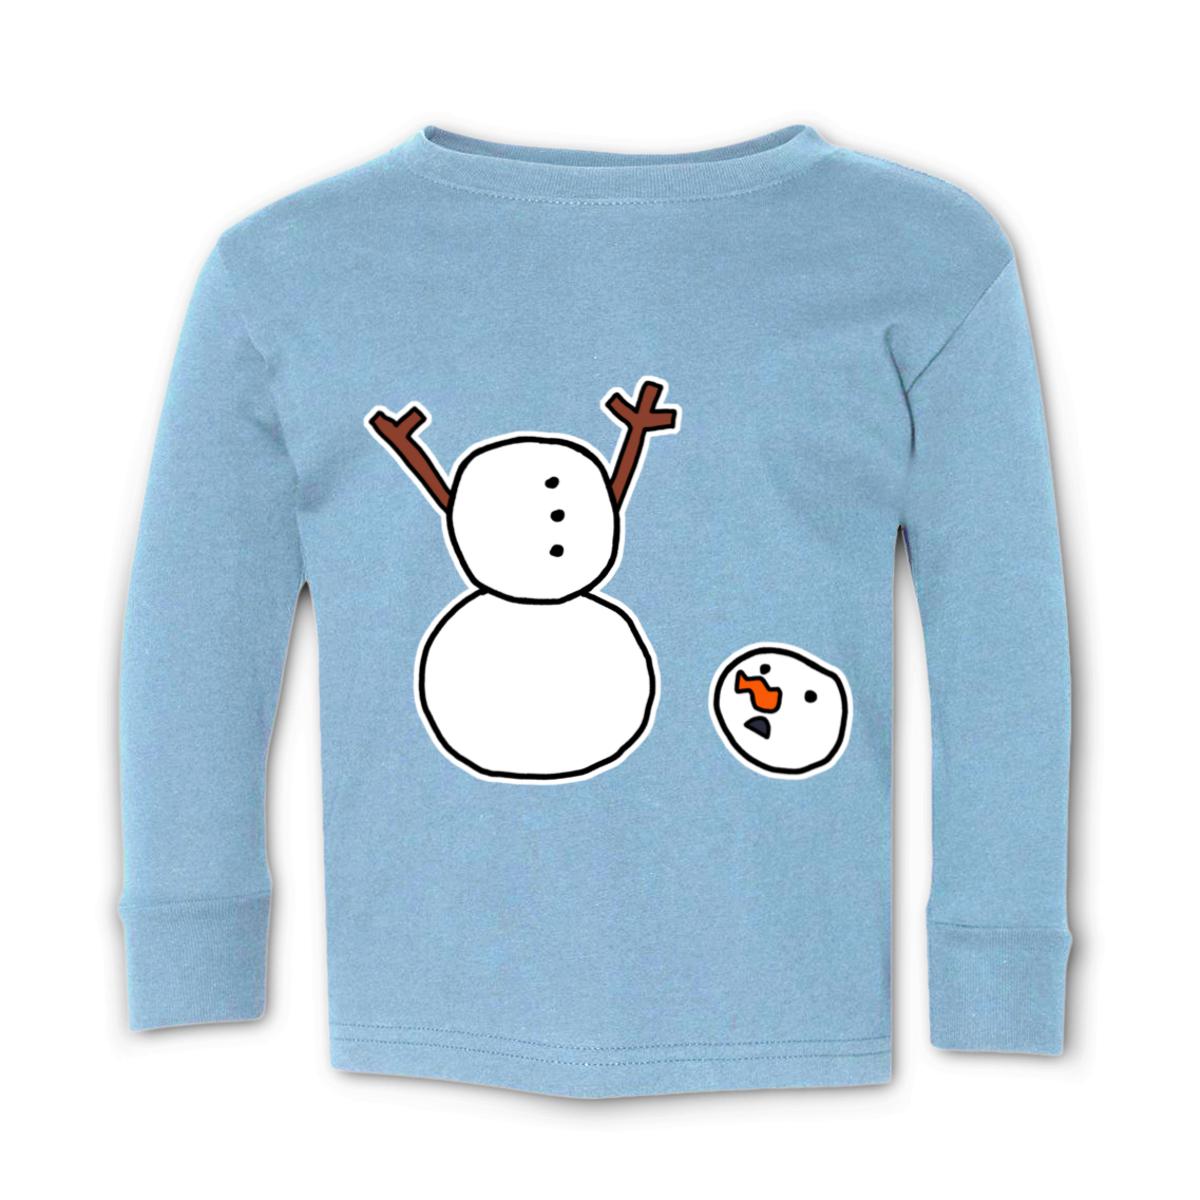 Headless Snowman Toddler Long Sleeve Tee 56T light-blue